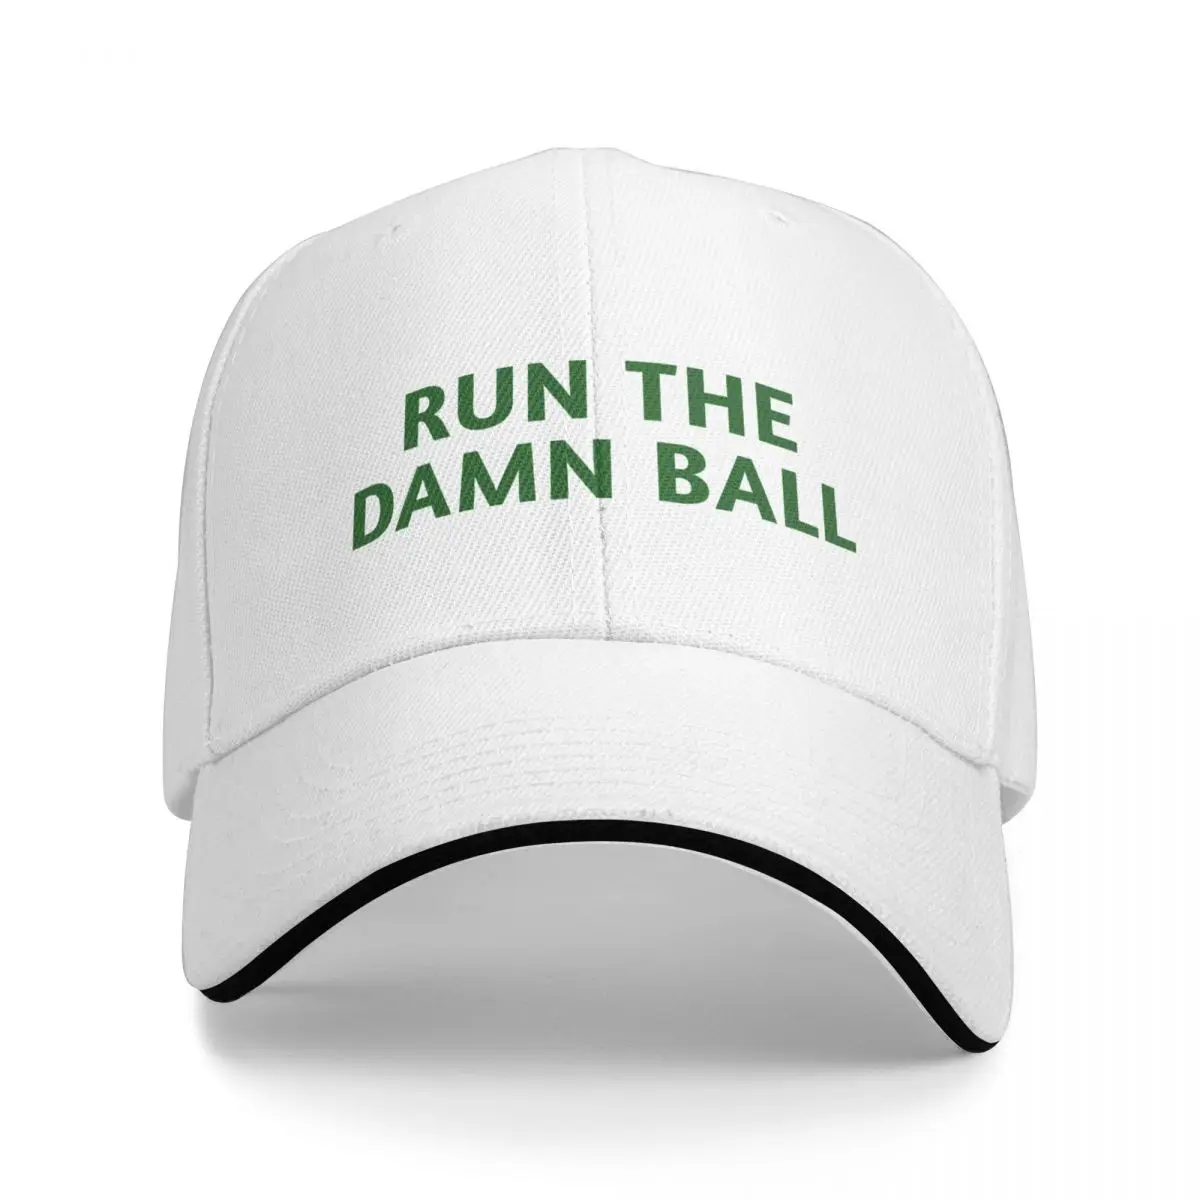 Run the damn топка / Зелен / Зелена шапка run the damn топка Бейзболна Шапка Аниме Шапка Шапка за голф Мъжки летни шапки, Шапка, Дамски Мъжки Изображение 0